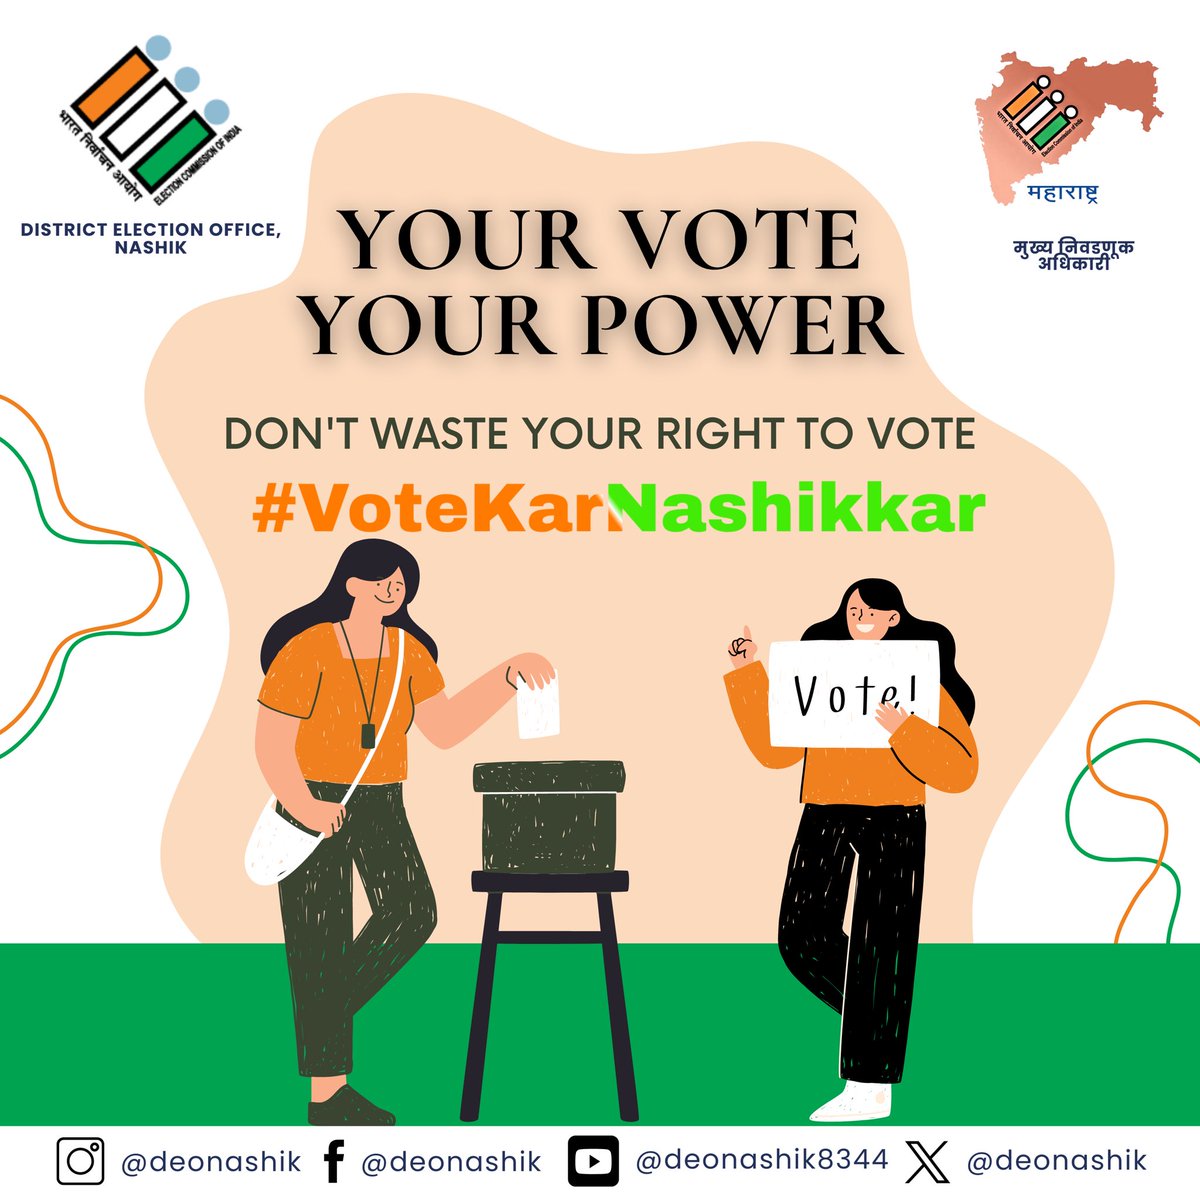 Your vote is your power💪🏼 Don't waste it. #votekarnashikkar